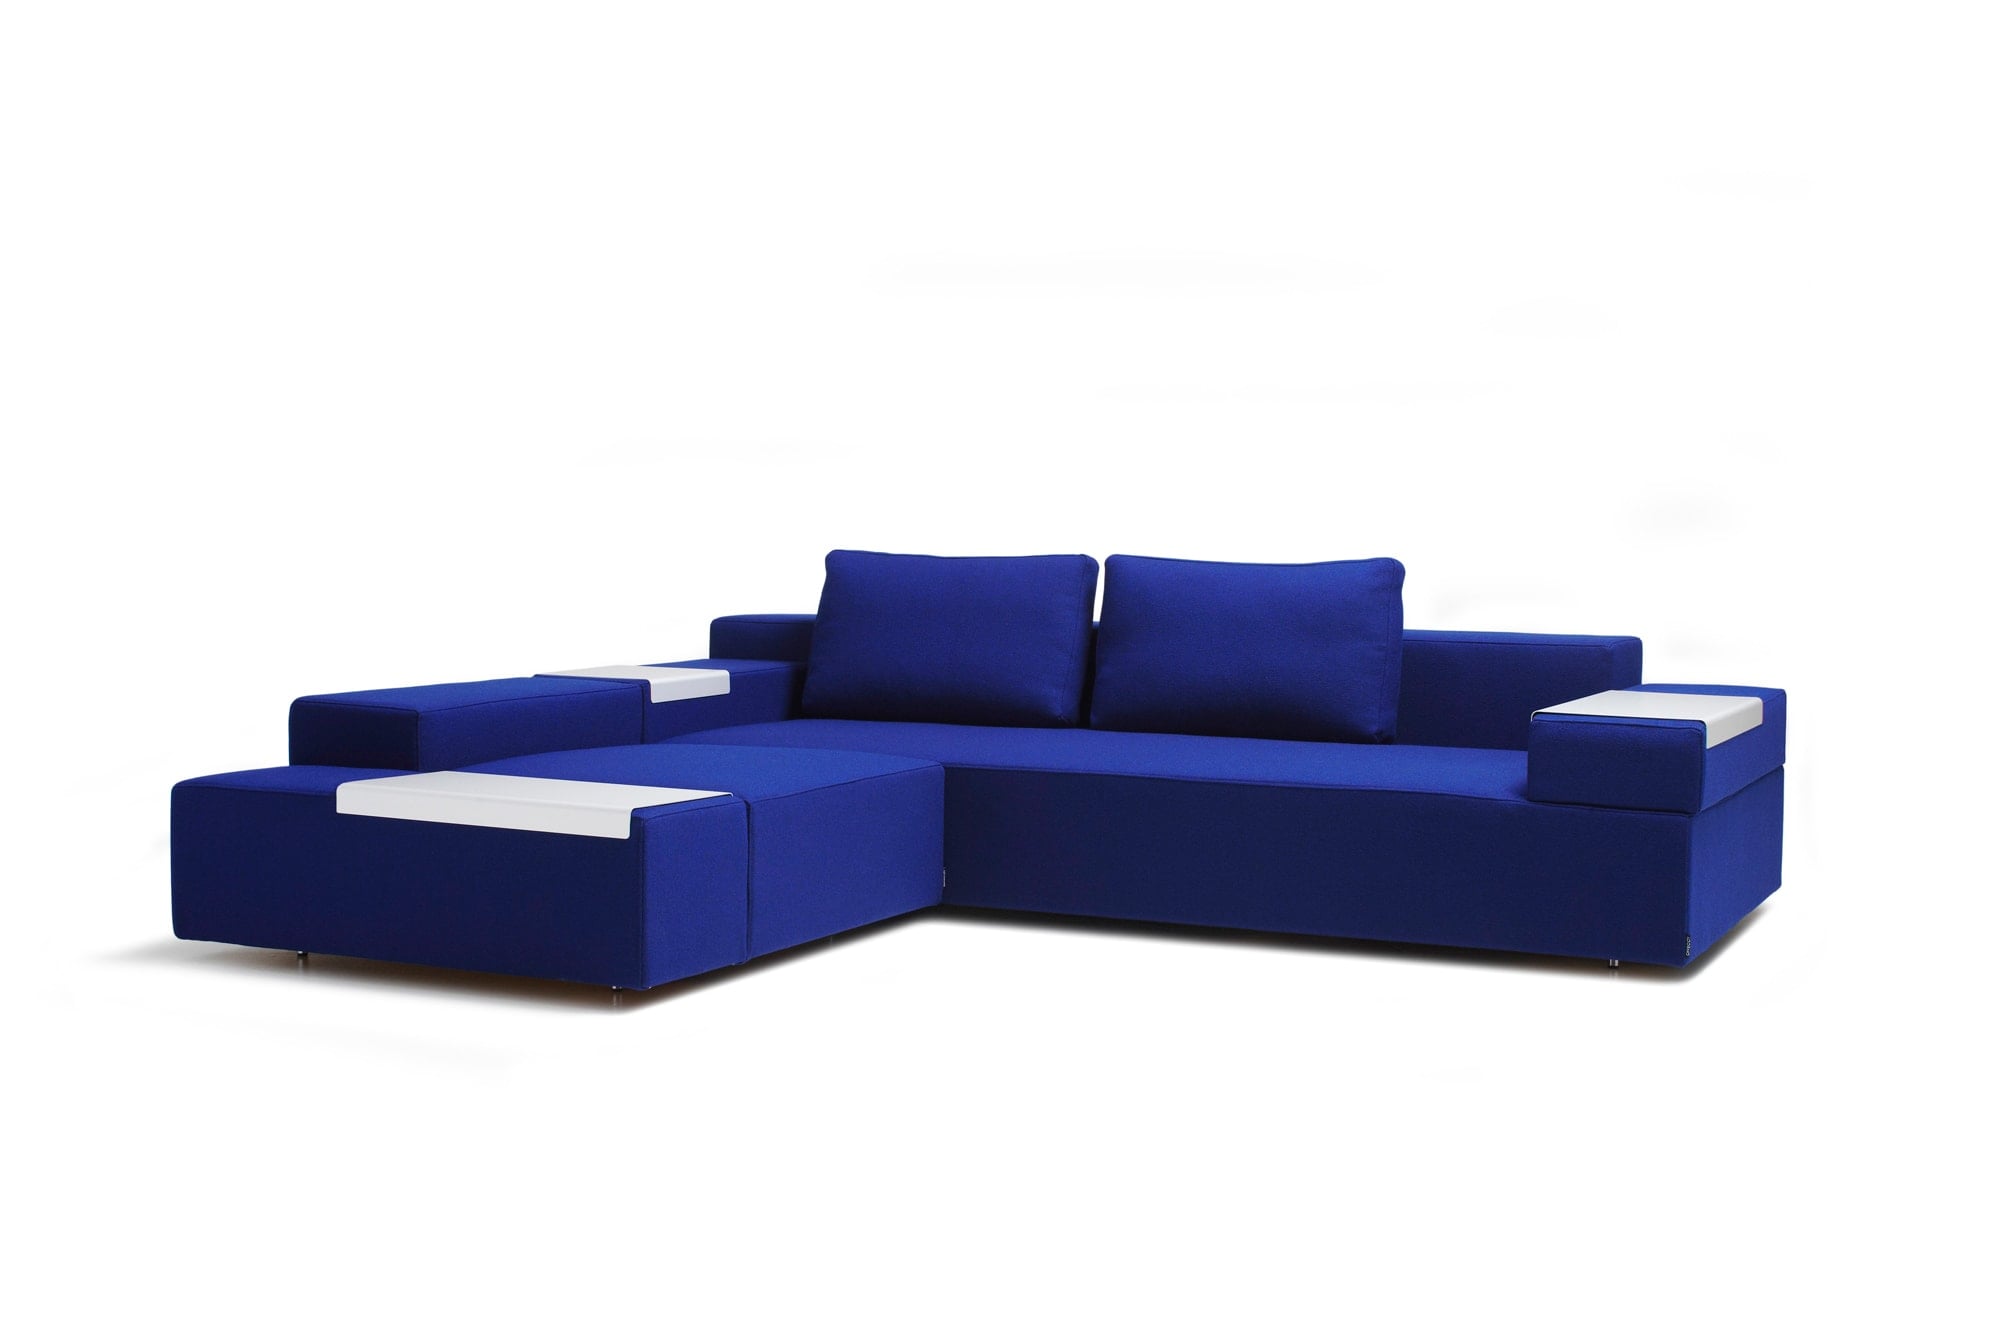 柳原为瑞典家具制造商OFFECCT设计的沙发。